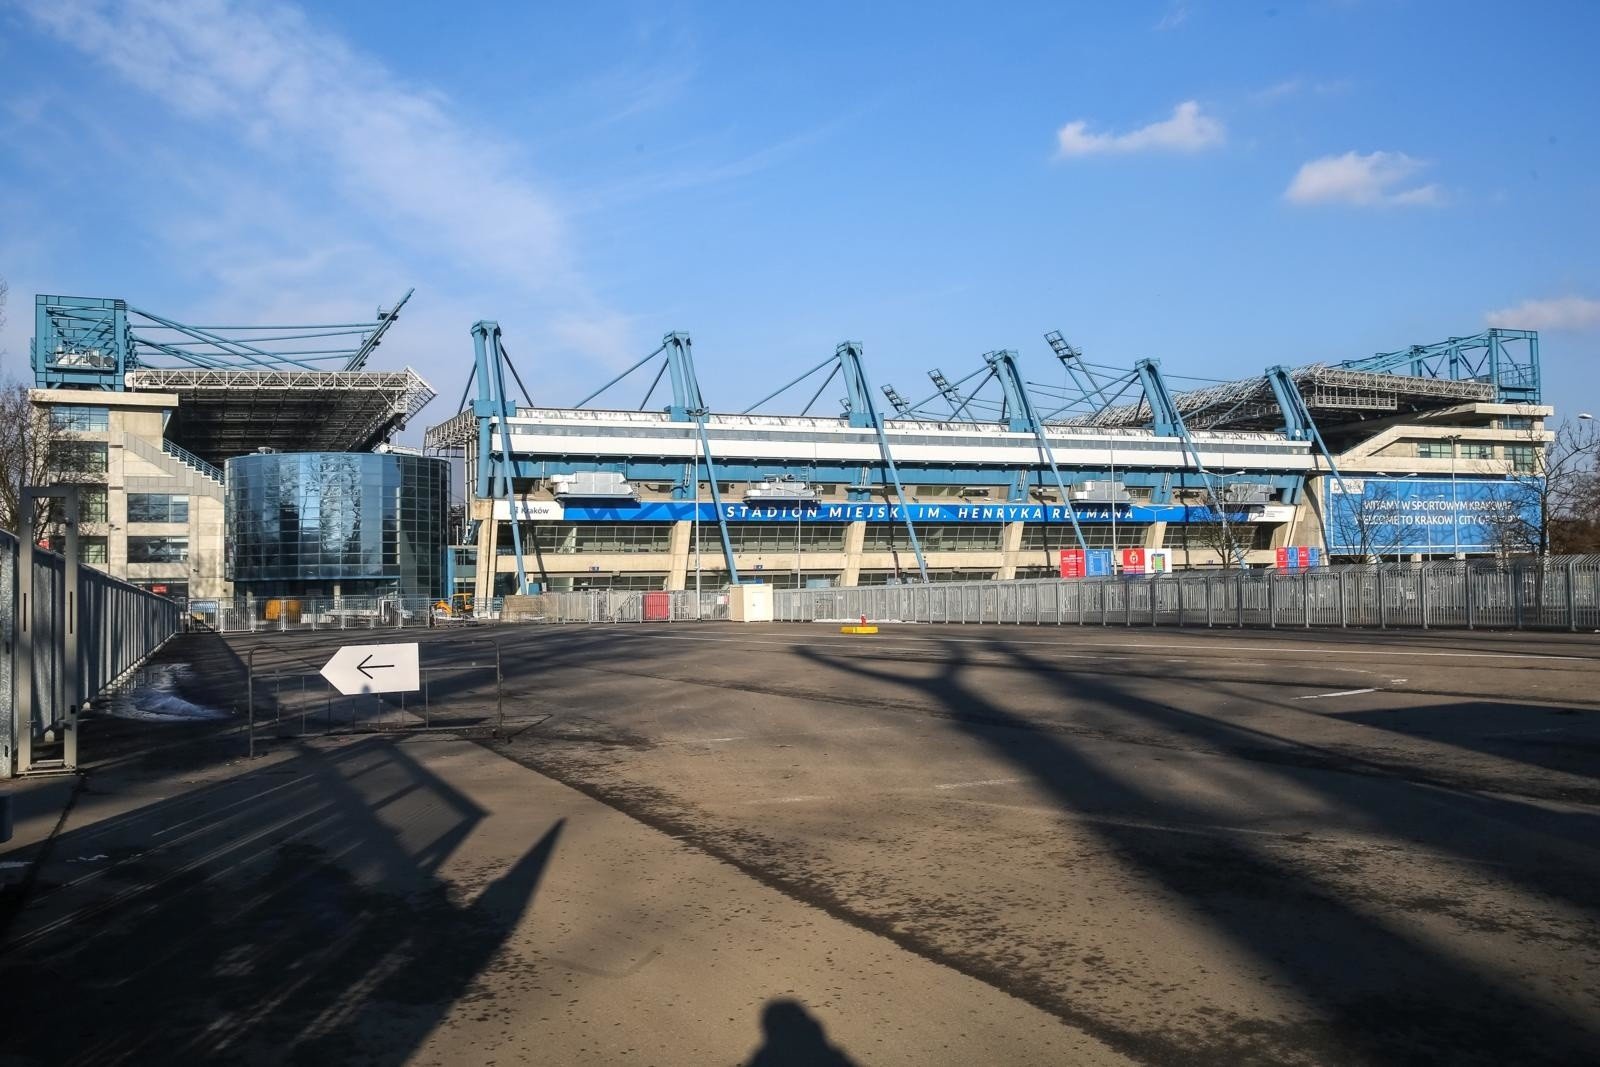 Krakau Stadion